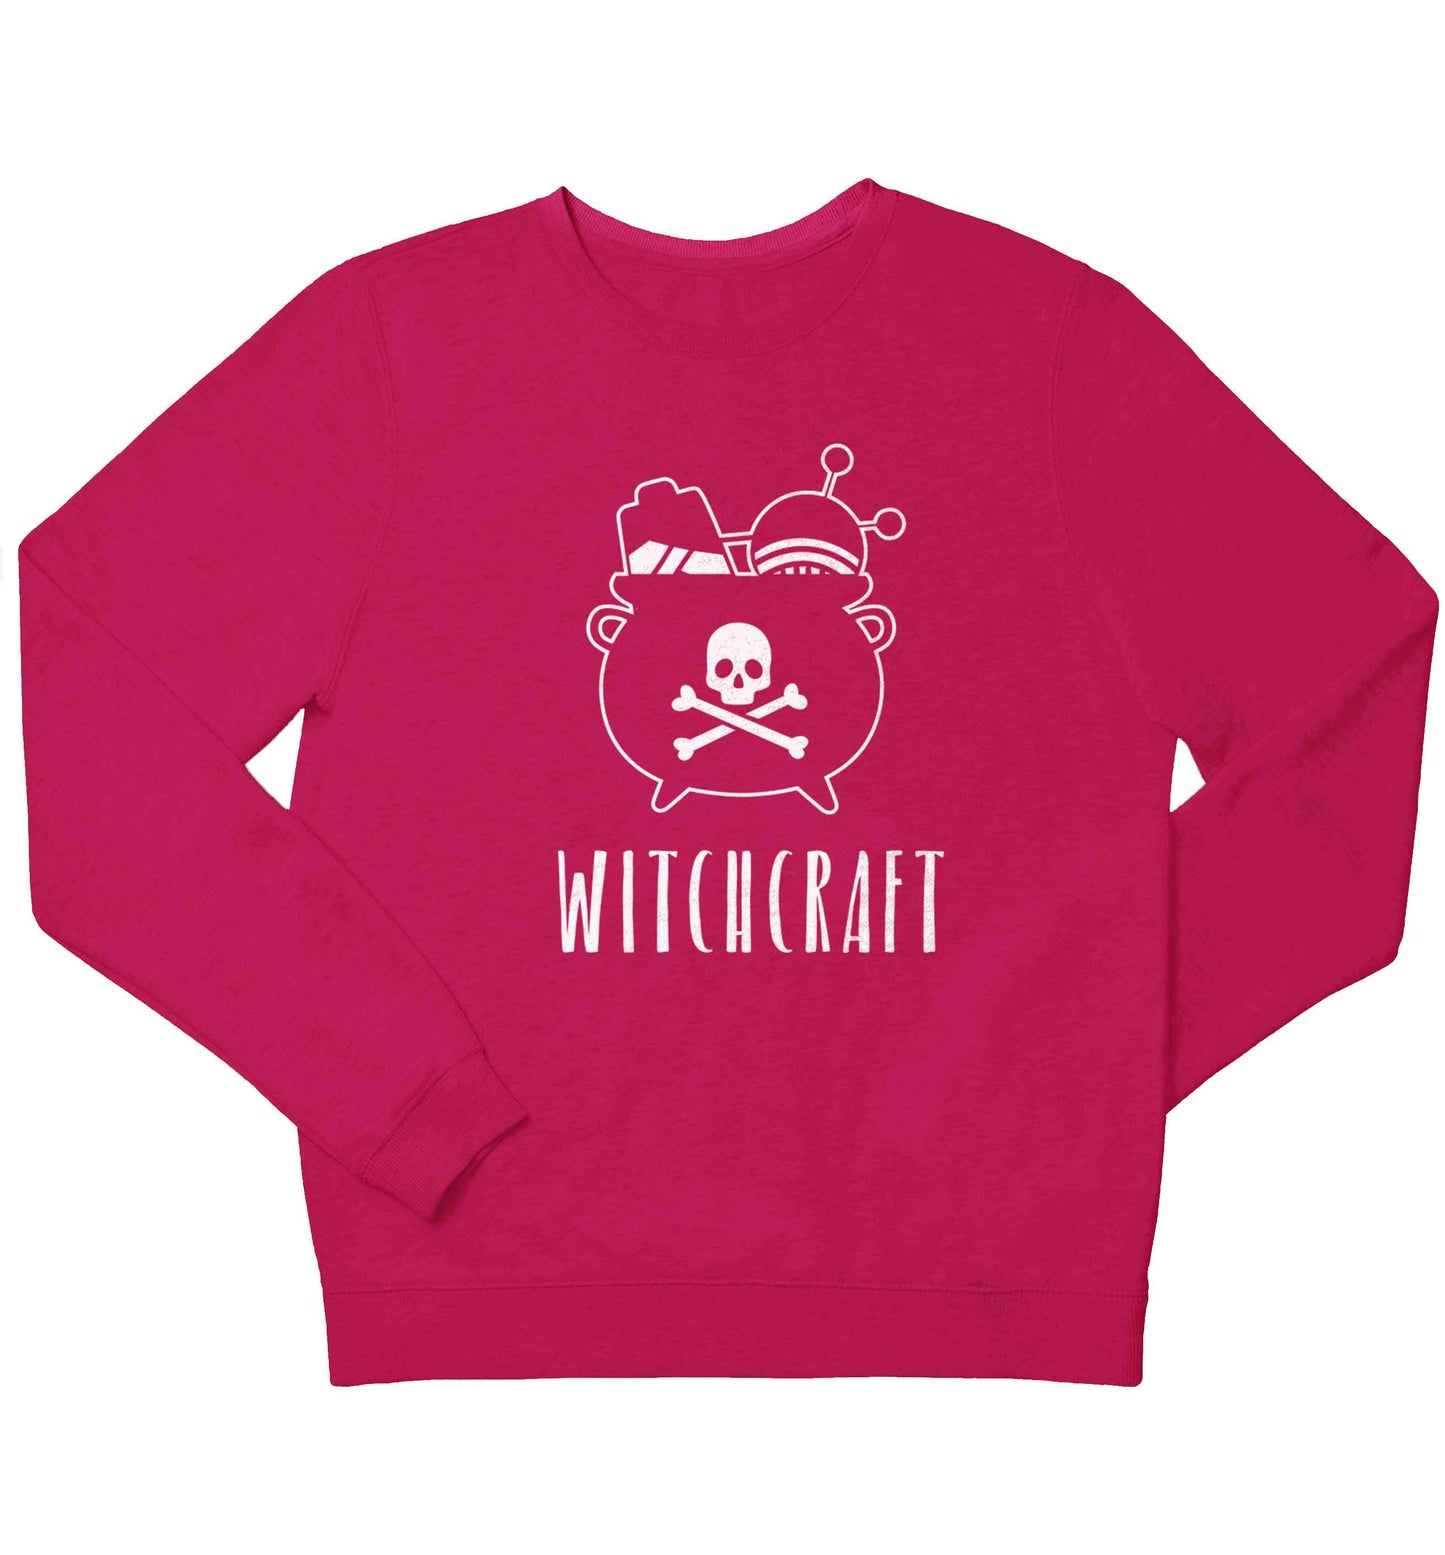 Witchcraft children's pink sweater 12-13 Years